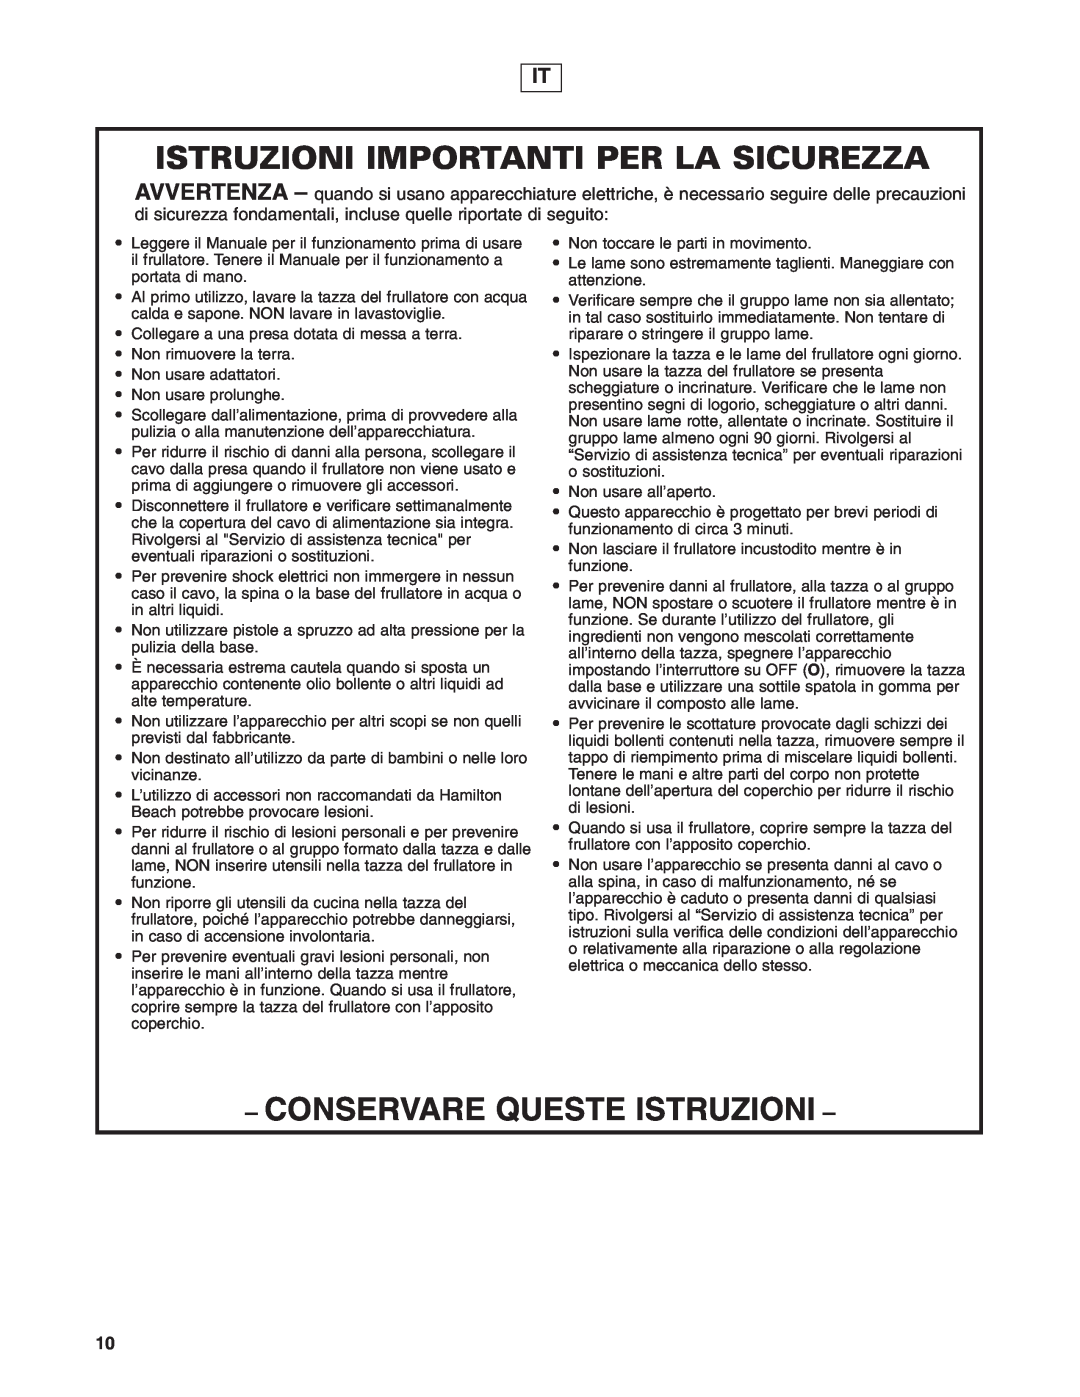 Hamilton Beach 908 Series operation manual Istruzioni Importanti Per La Sicurezza, Conservare Queste Istruzioni 